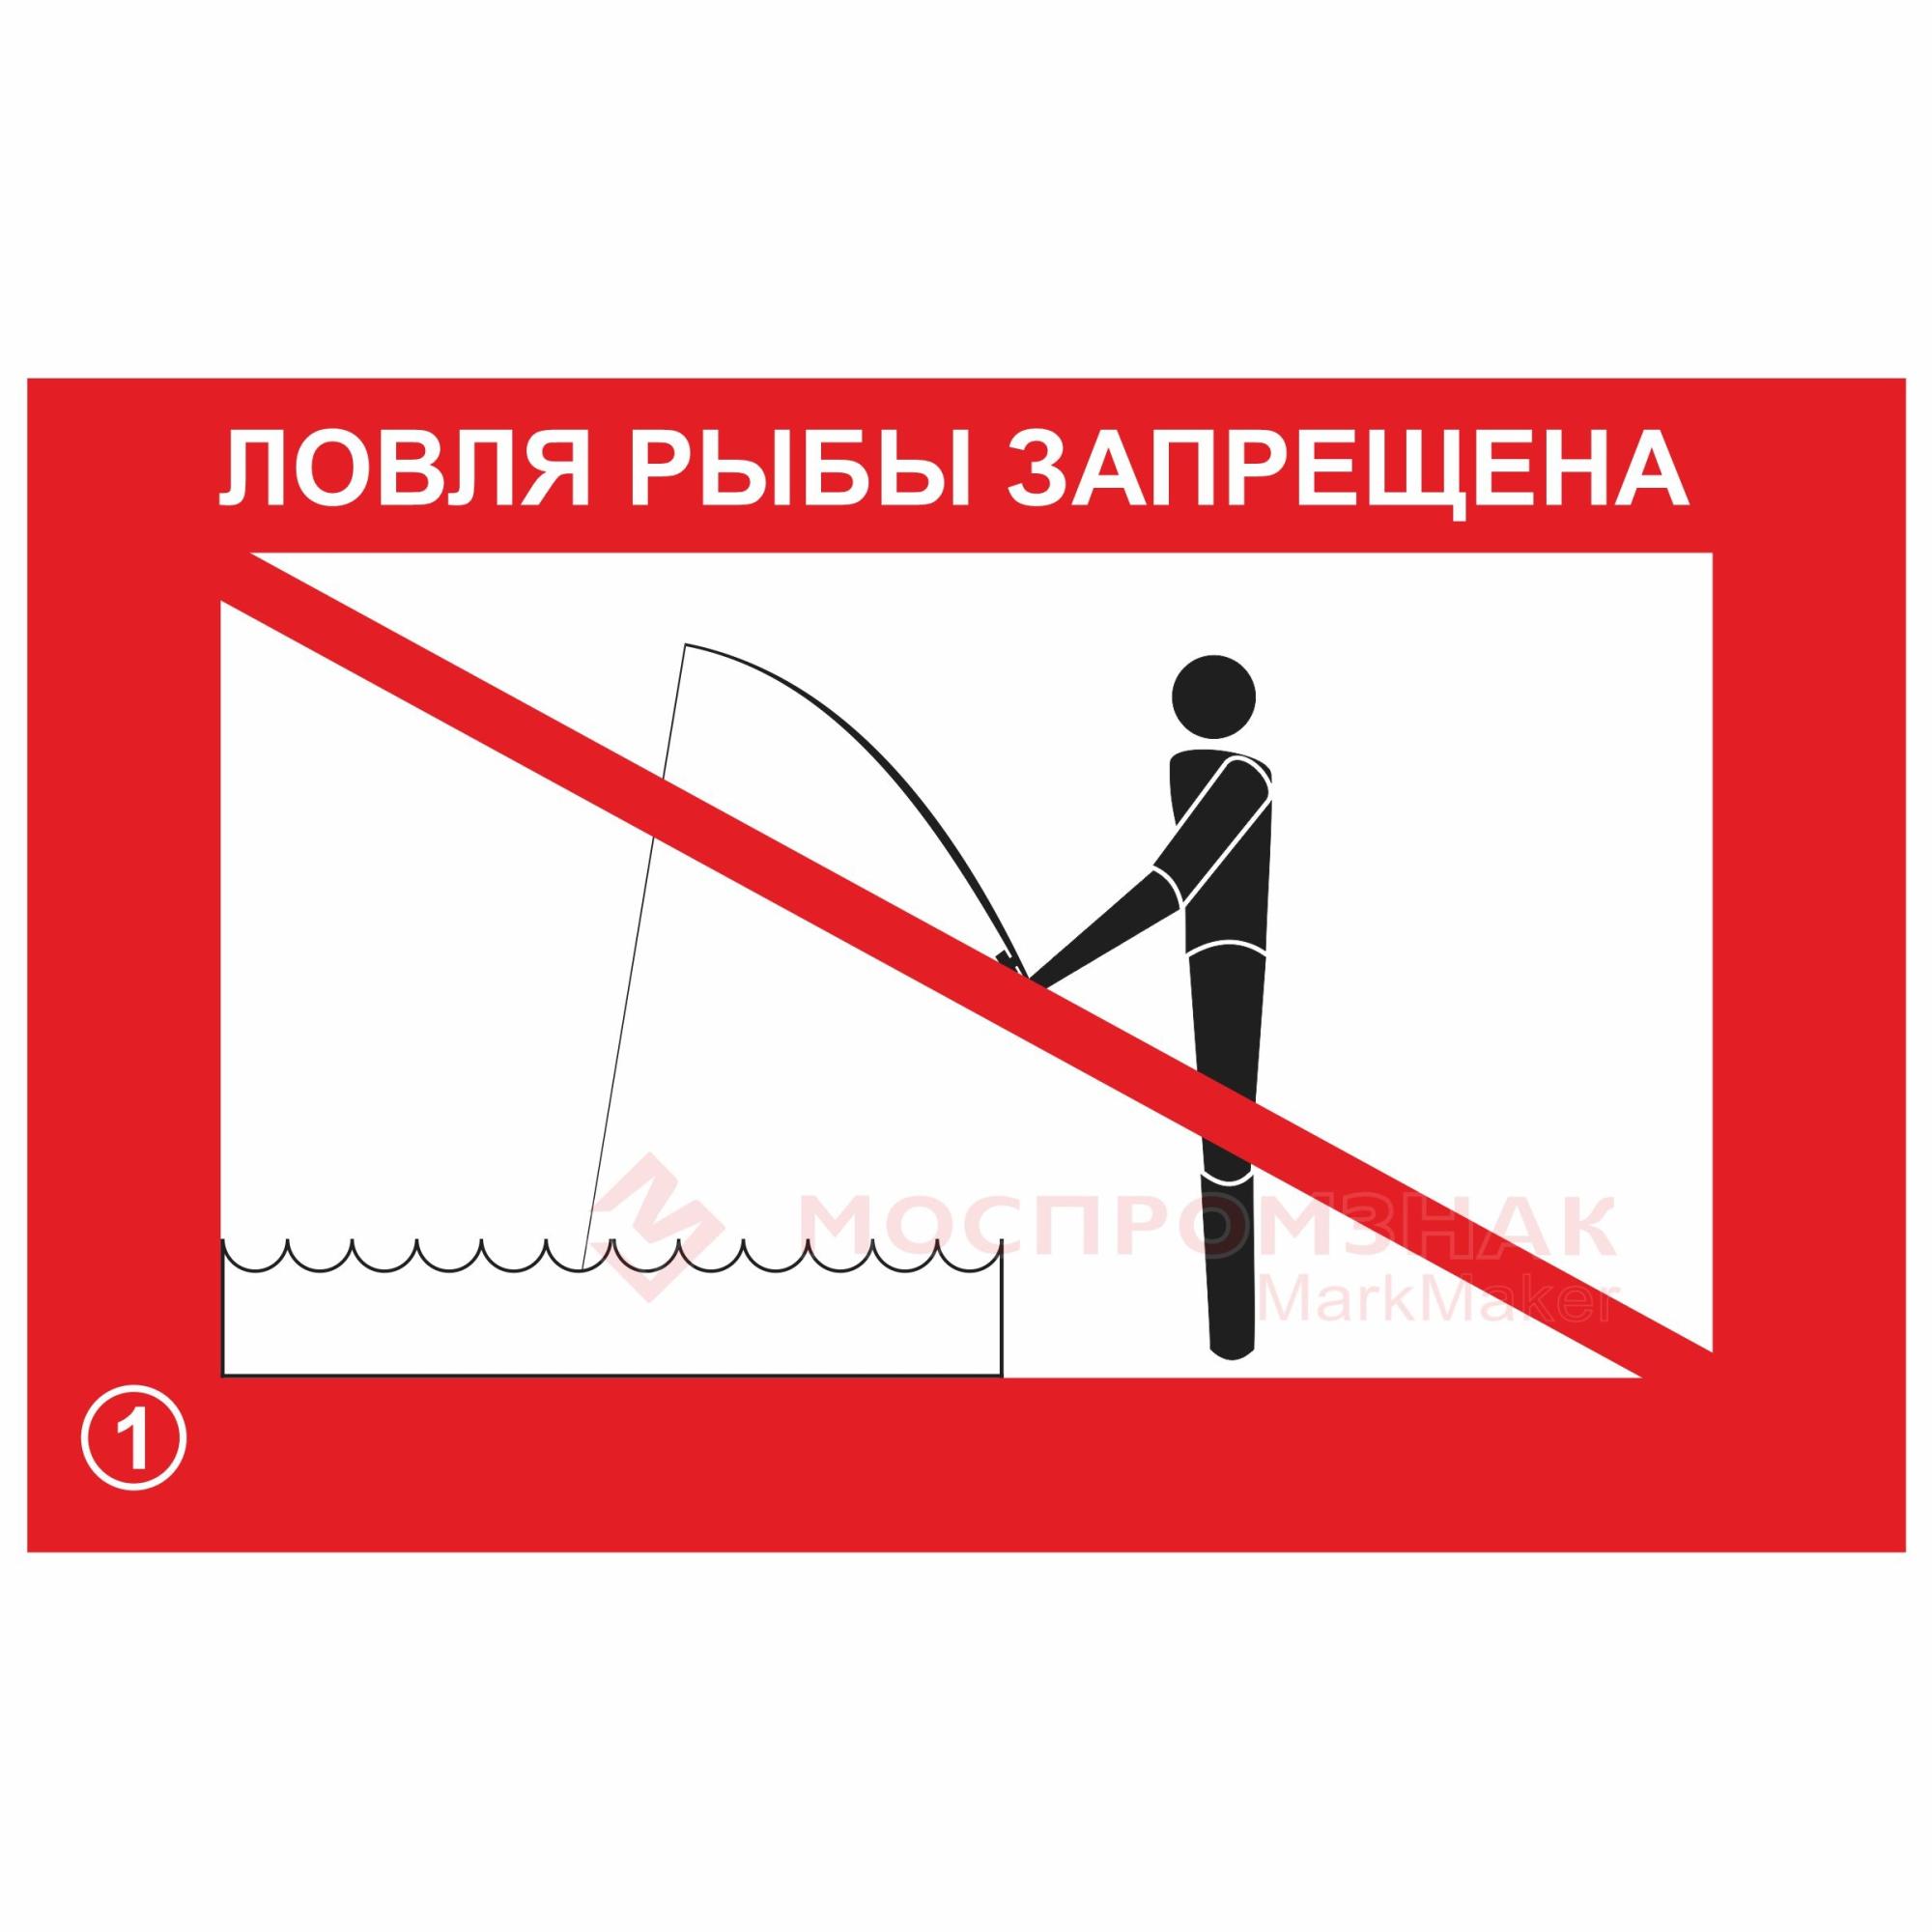 Ловля рыбы запрещена. Ловля рыбы запрещена знак. Ловля рыбы запрещена табличка. Рыбная ловля запрещена табличка. Запрет на лов воблы